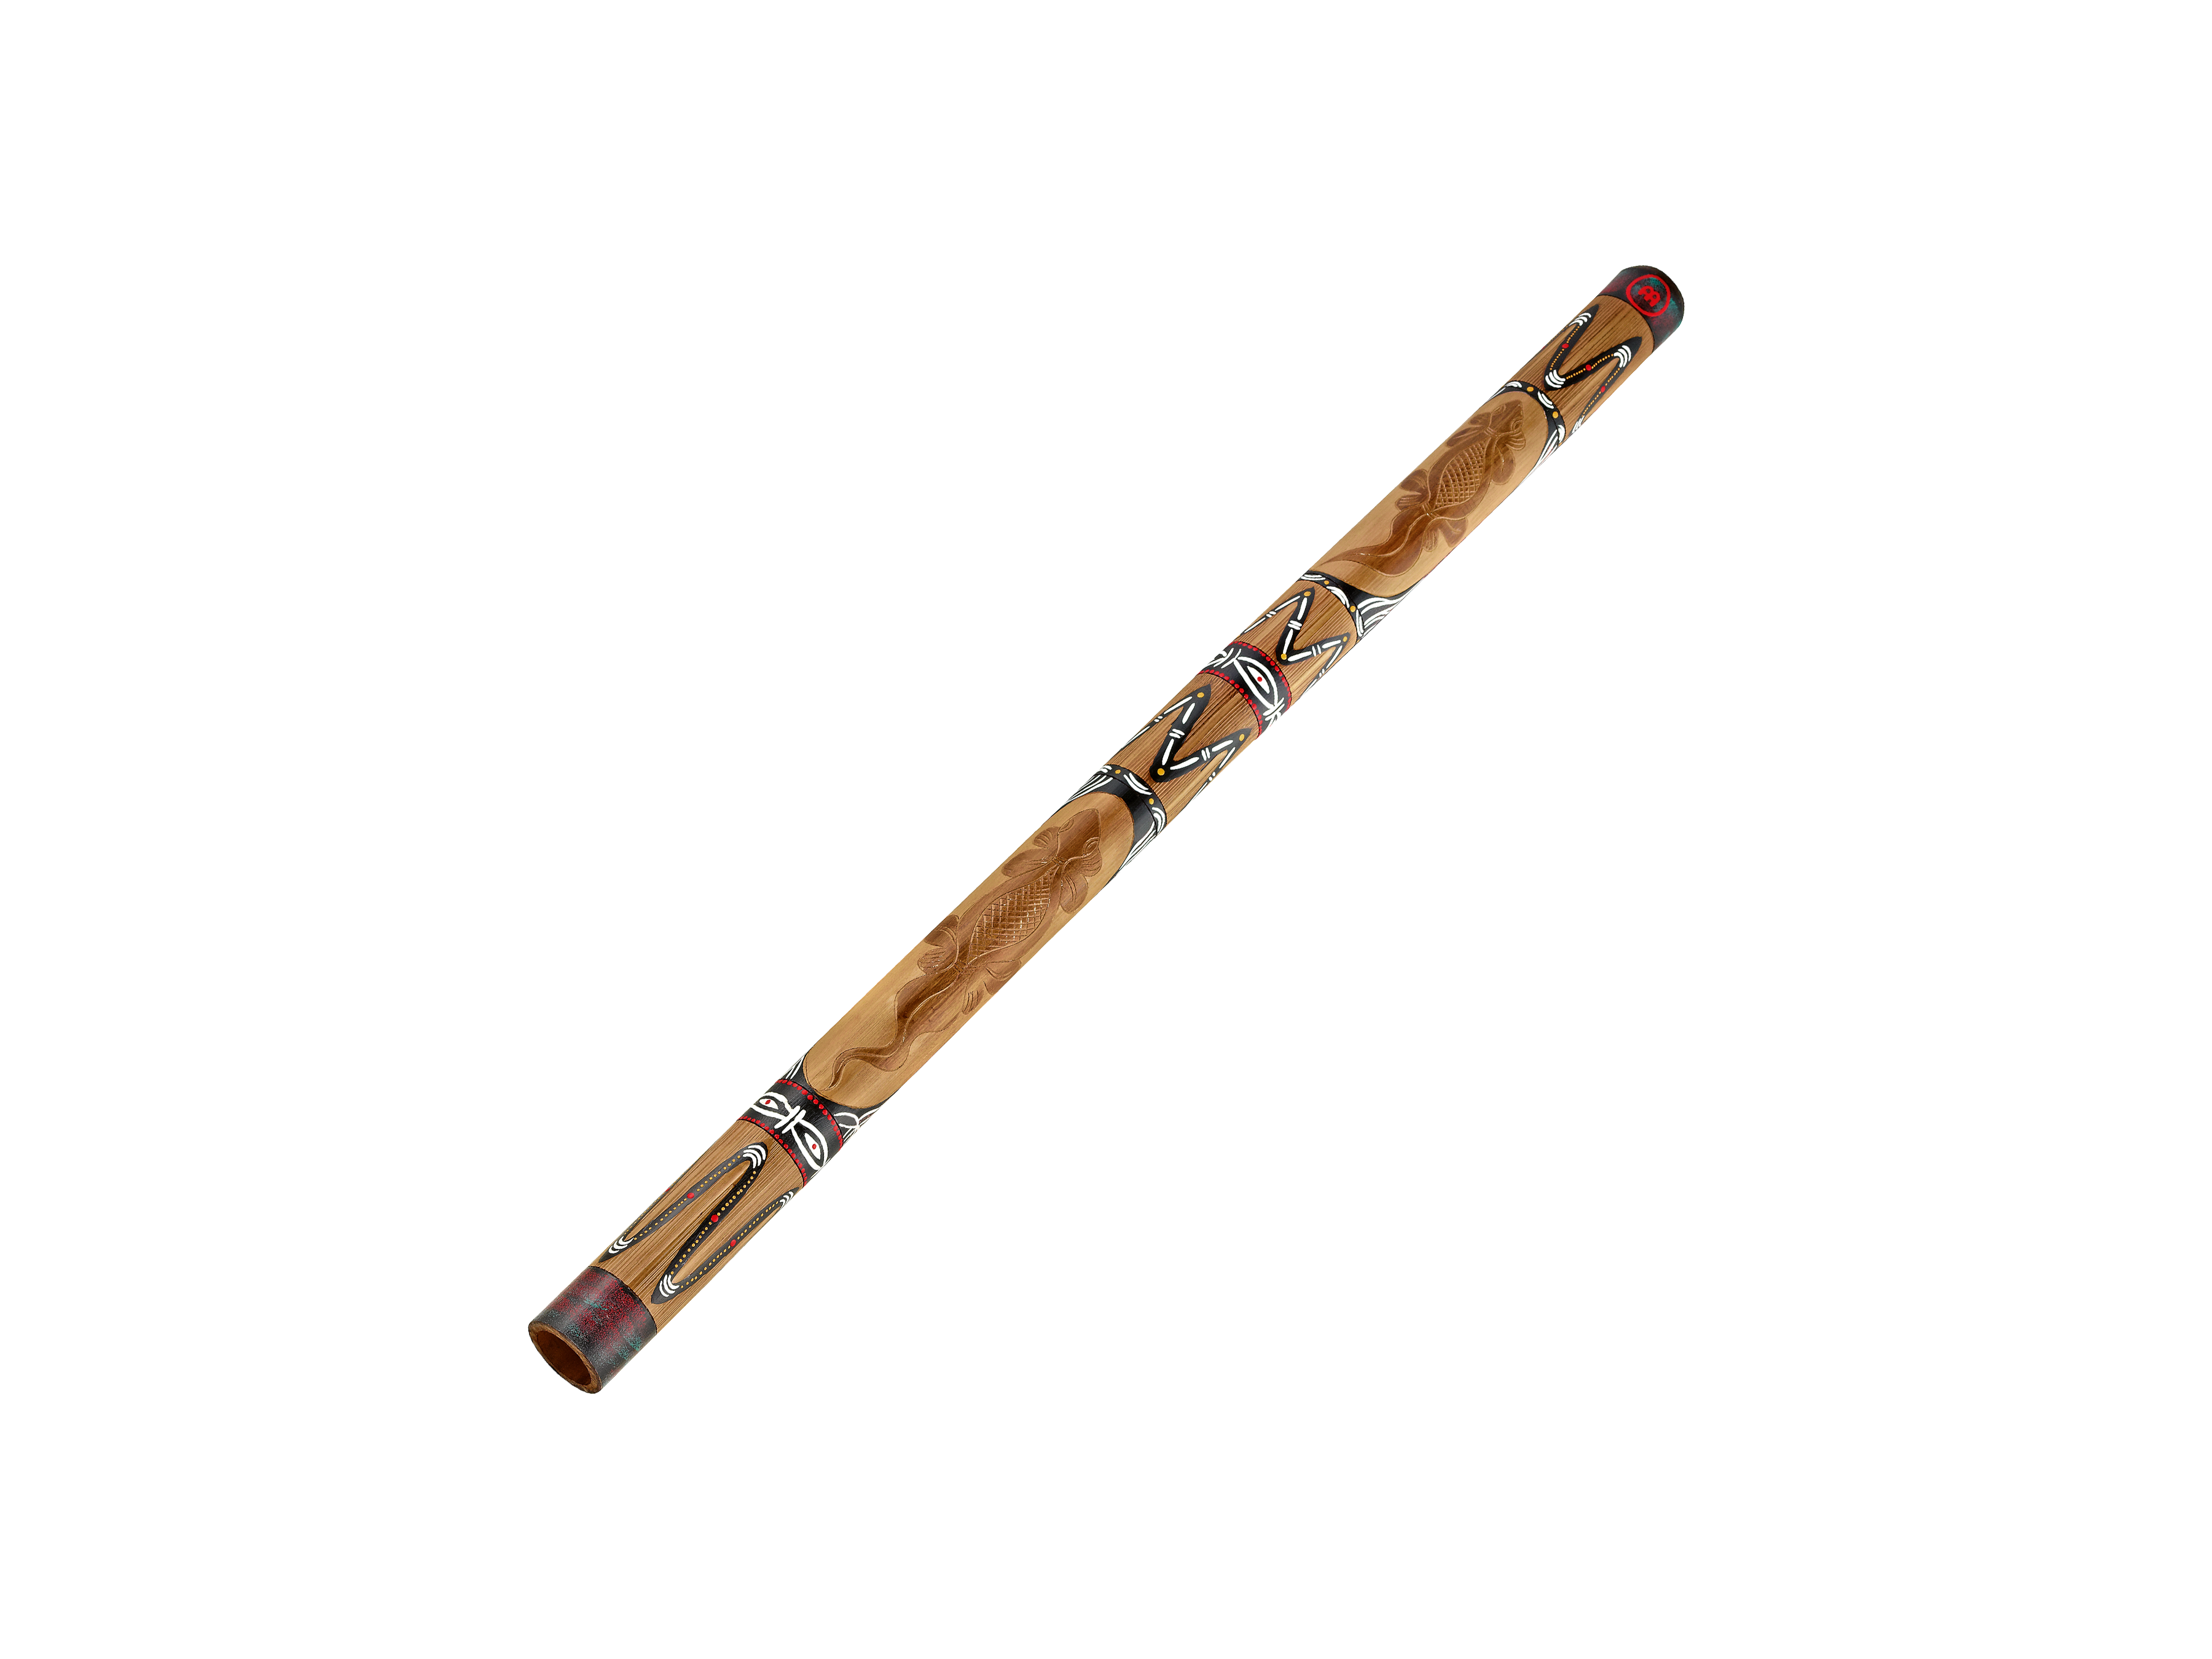 Didgeridoo PNG-PlusPNG.com-21